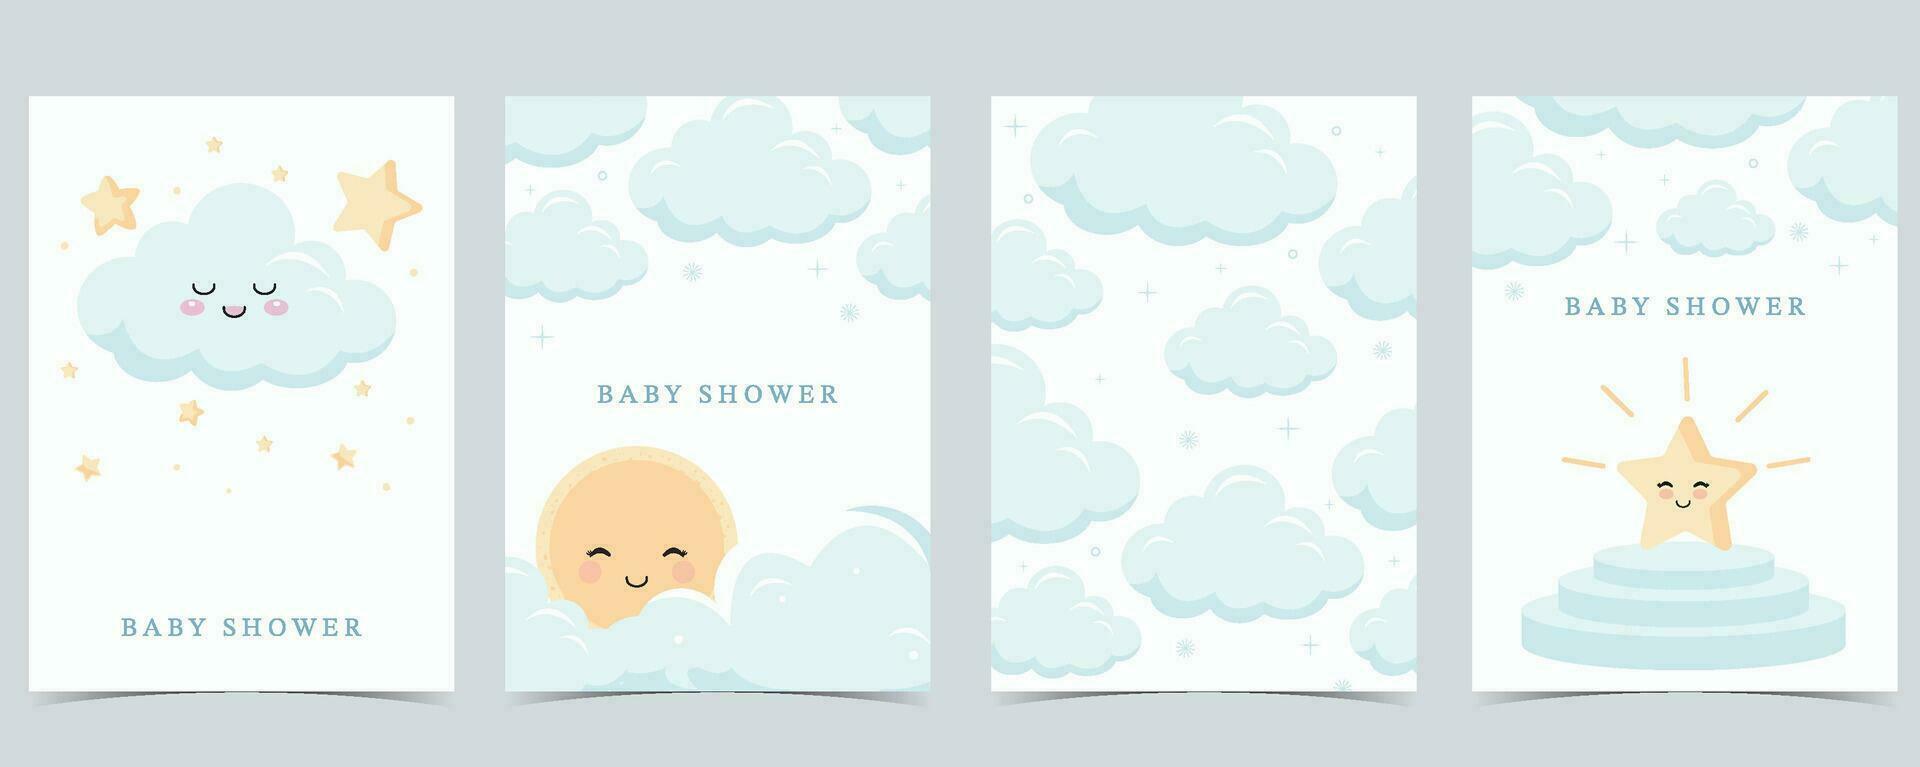 bebé ducha invitación tarjeta para chico con globo, nube, cielo, azul vector